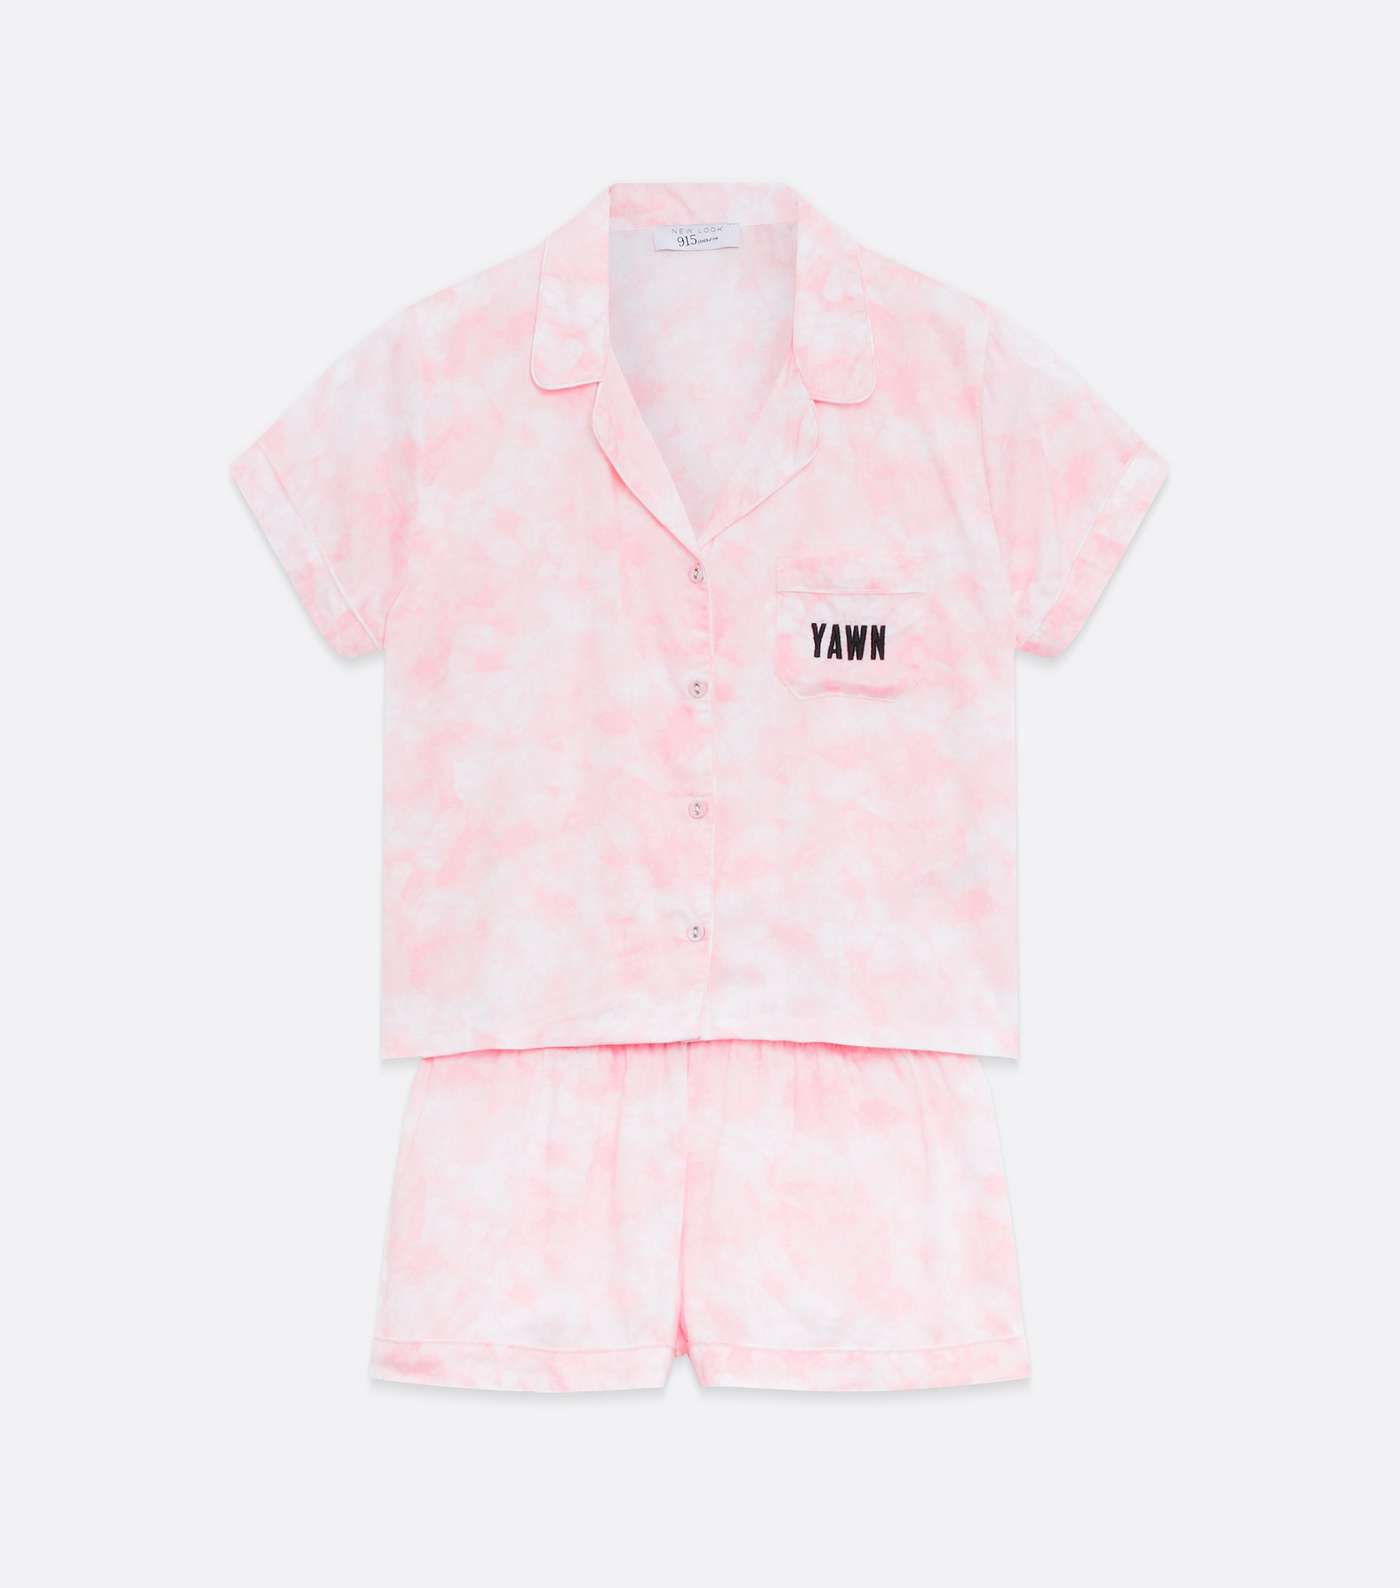 Girls Pink Tie Dye Yawn Logo Revere Short Pyjama Set Image 5